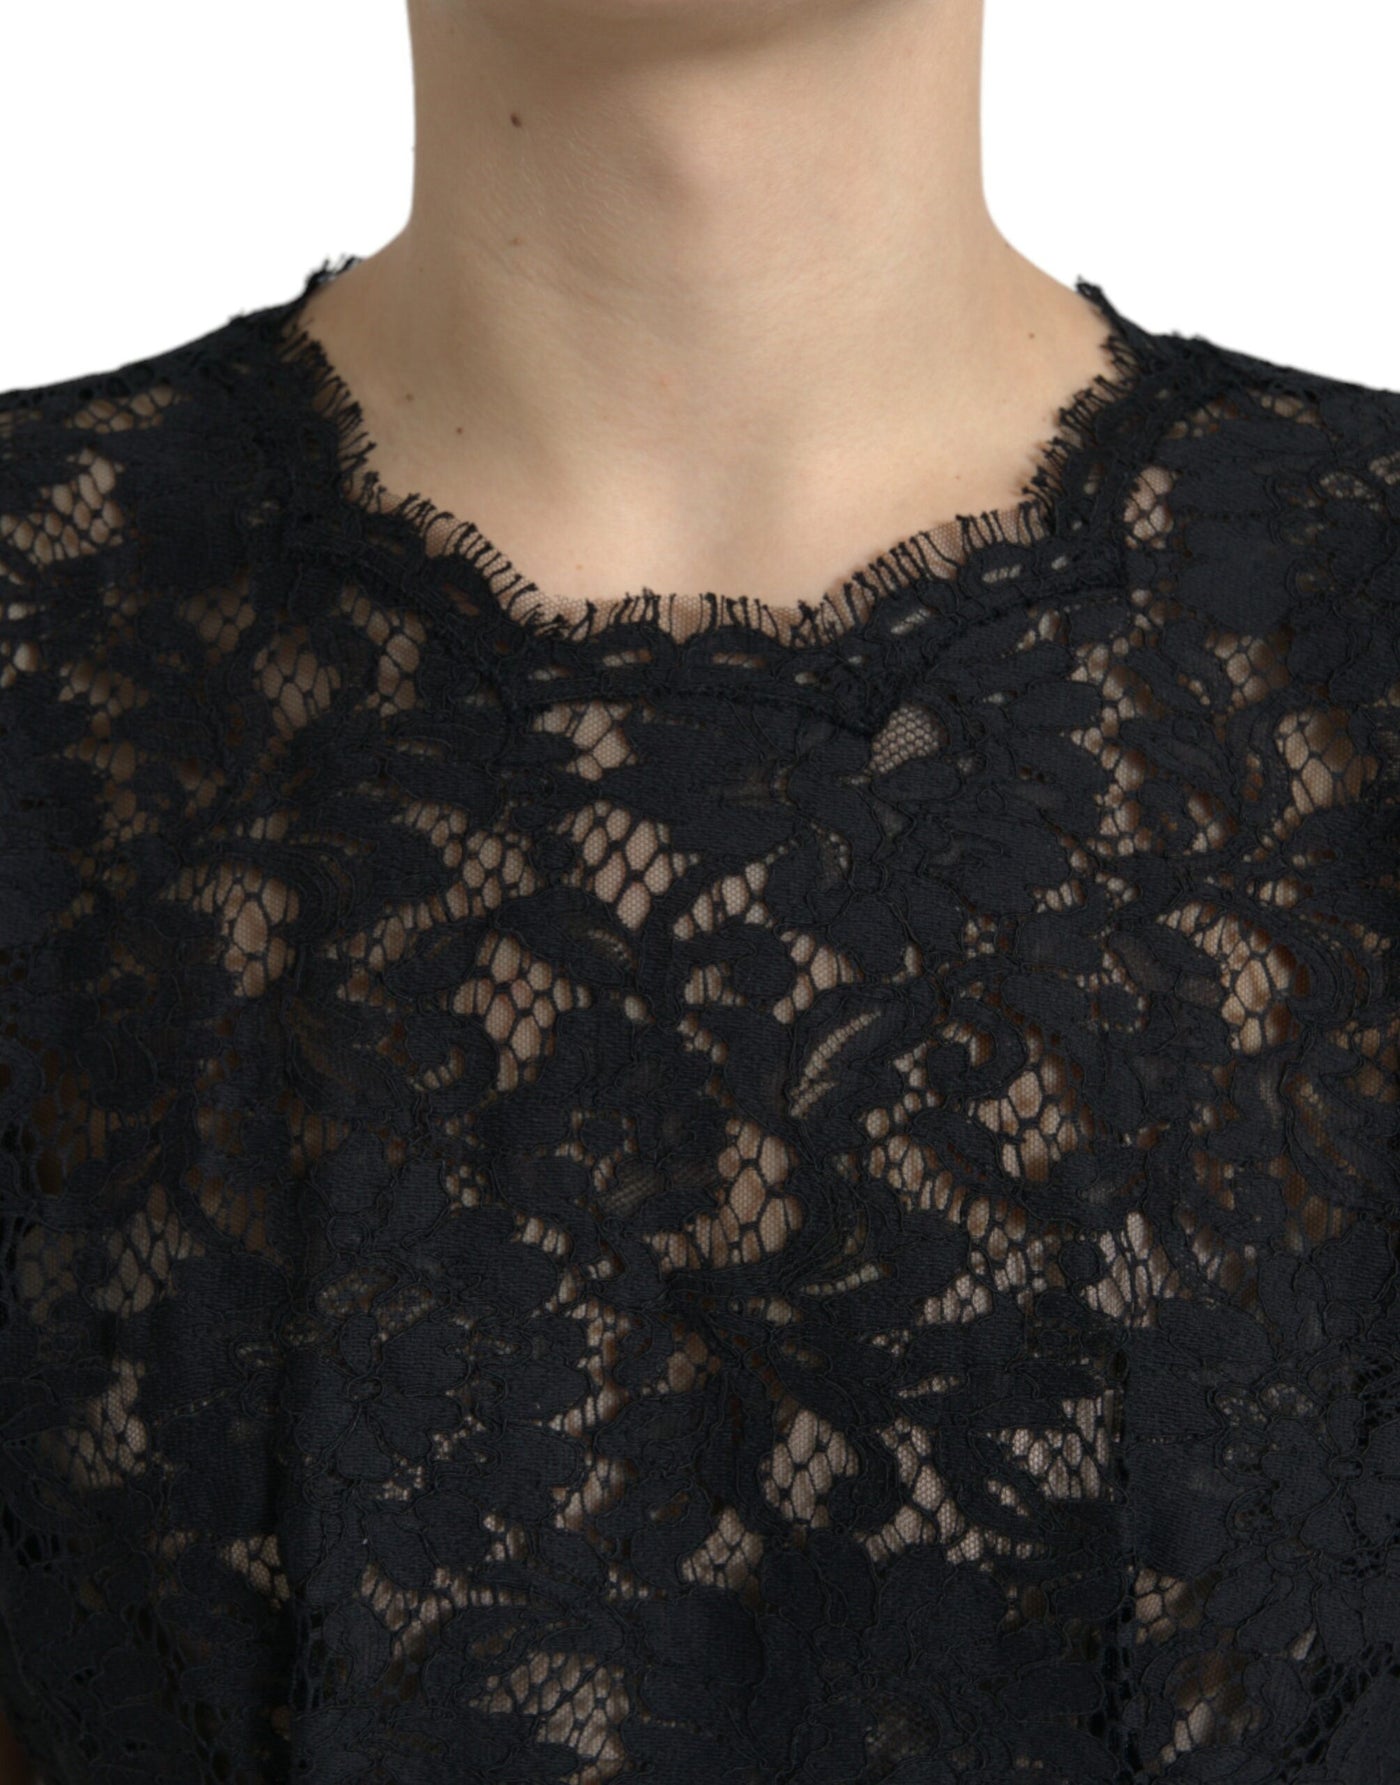 Dolce & Gabbana Black Floral Lace Cotton A-line Mini Dress